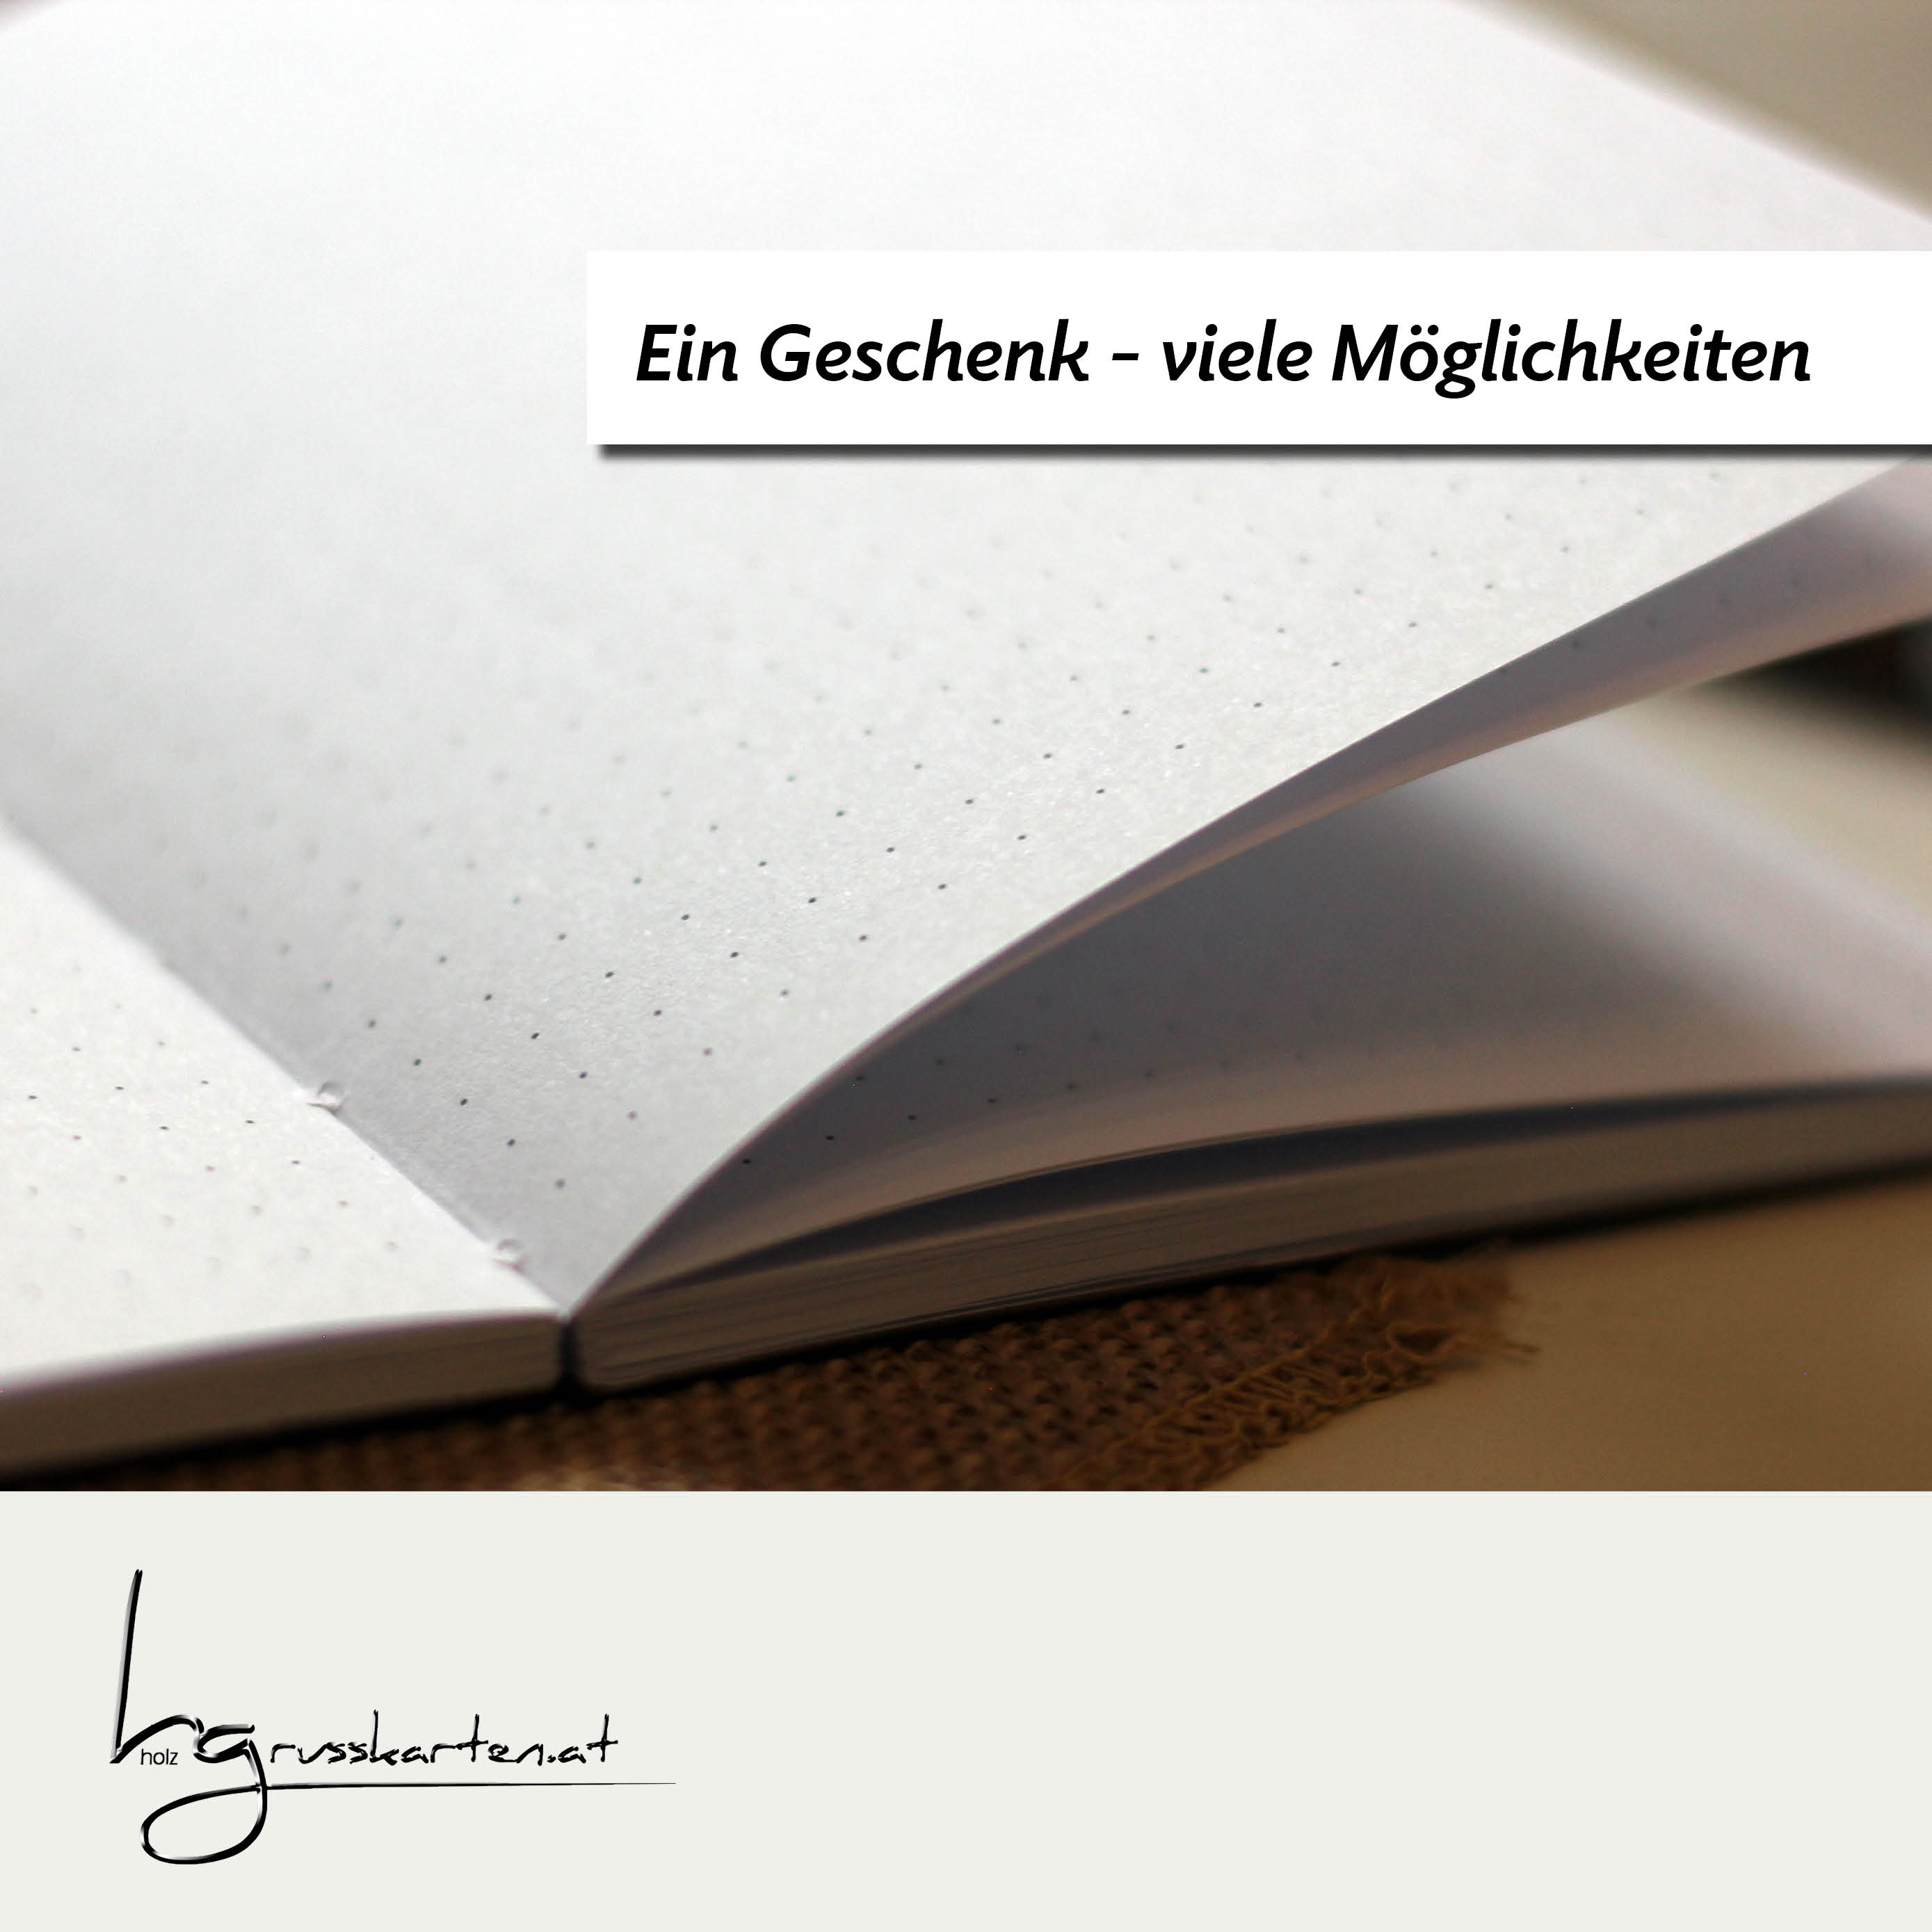 Notizbuch A6 mit Holzcover - Motiv "Baum des Lebens" - der Ort für Skizzen, Ideen, Rezepte, Erinnerungen, Wünsche, Ziele, Termine ...  Kopie